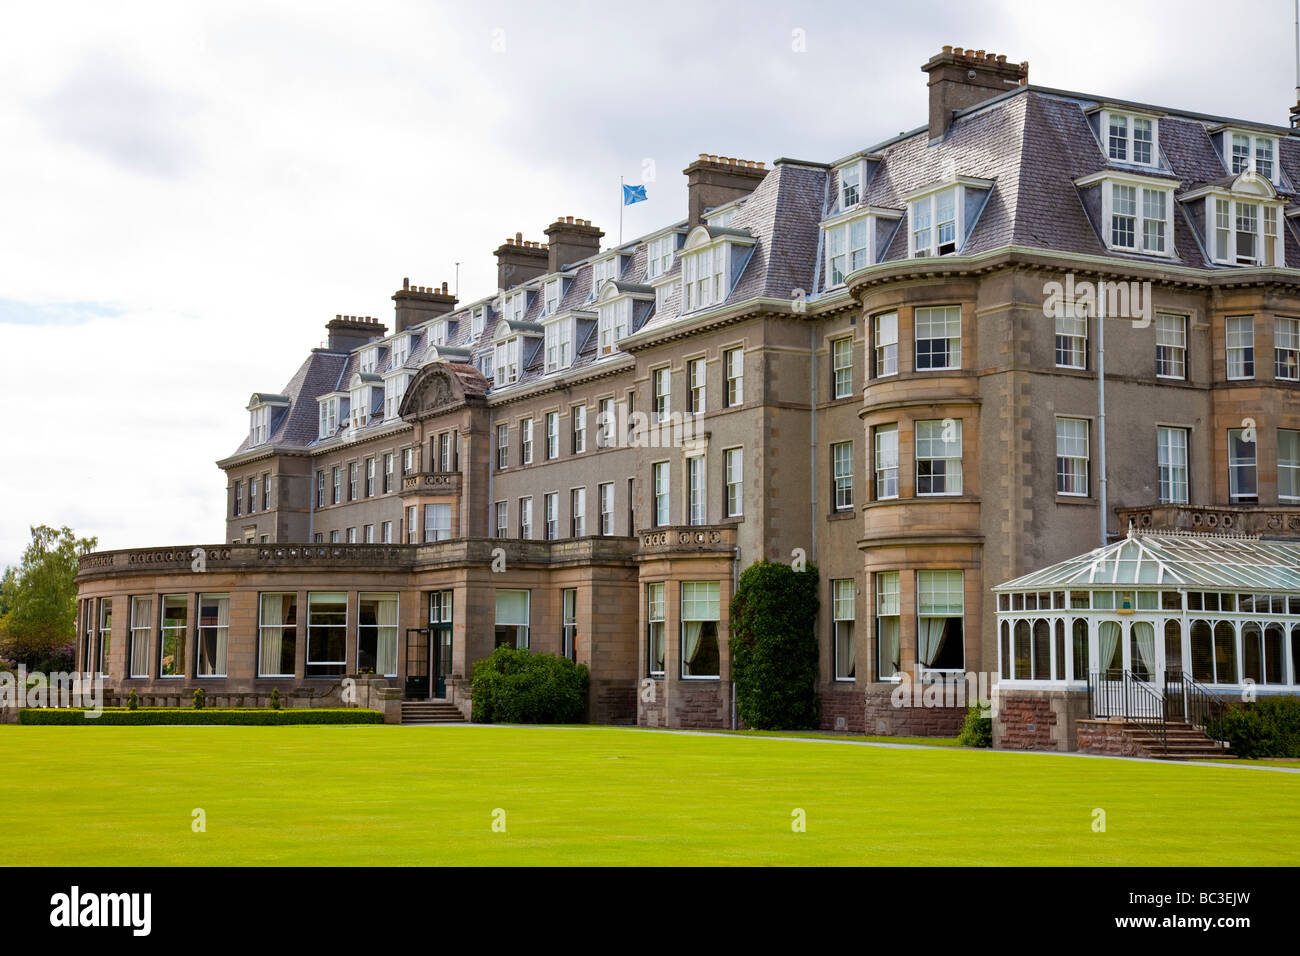 L'hôtel Gleneagles, Perthshire, Écosse ; architecture Georgienne, bay windows, une véranda, un salon bien semi-circulaire. Banque D'Images